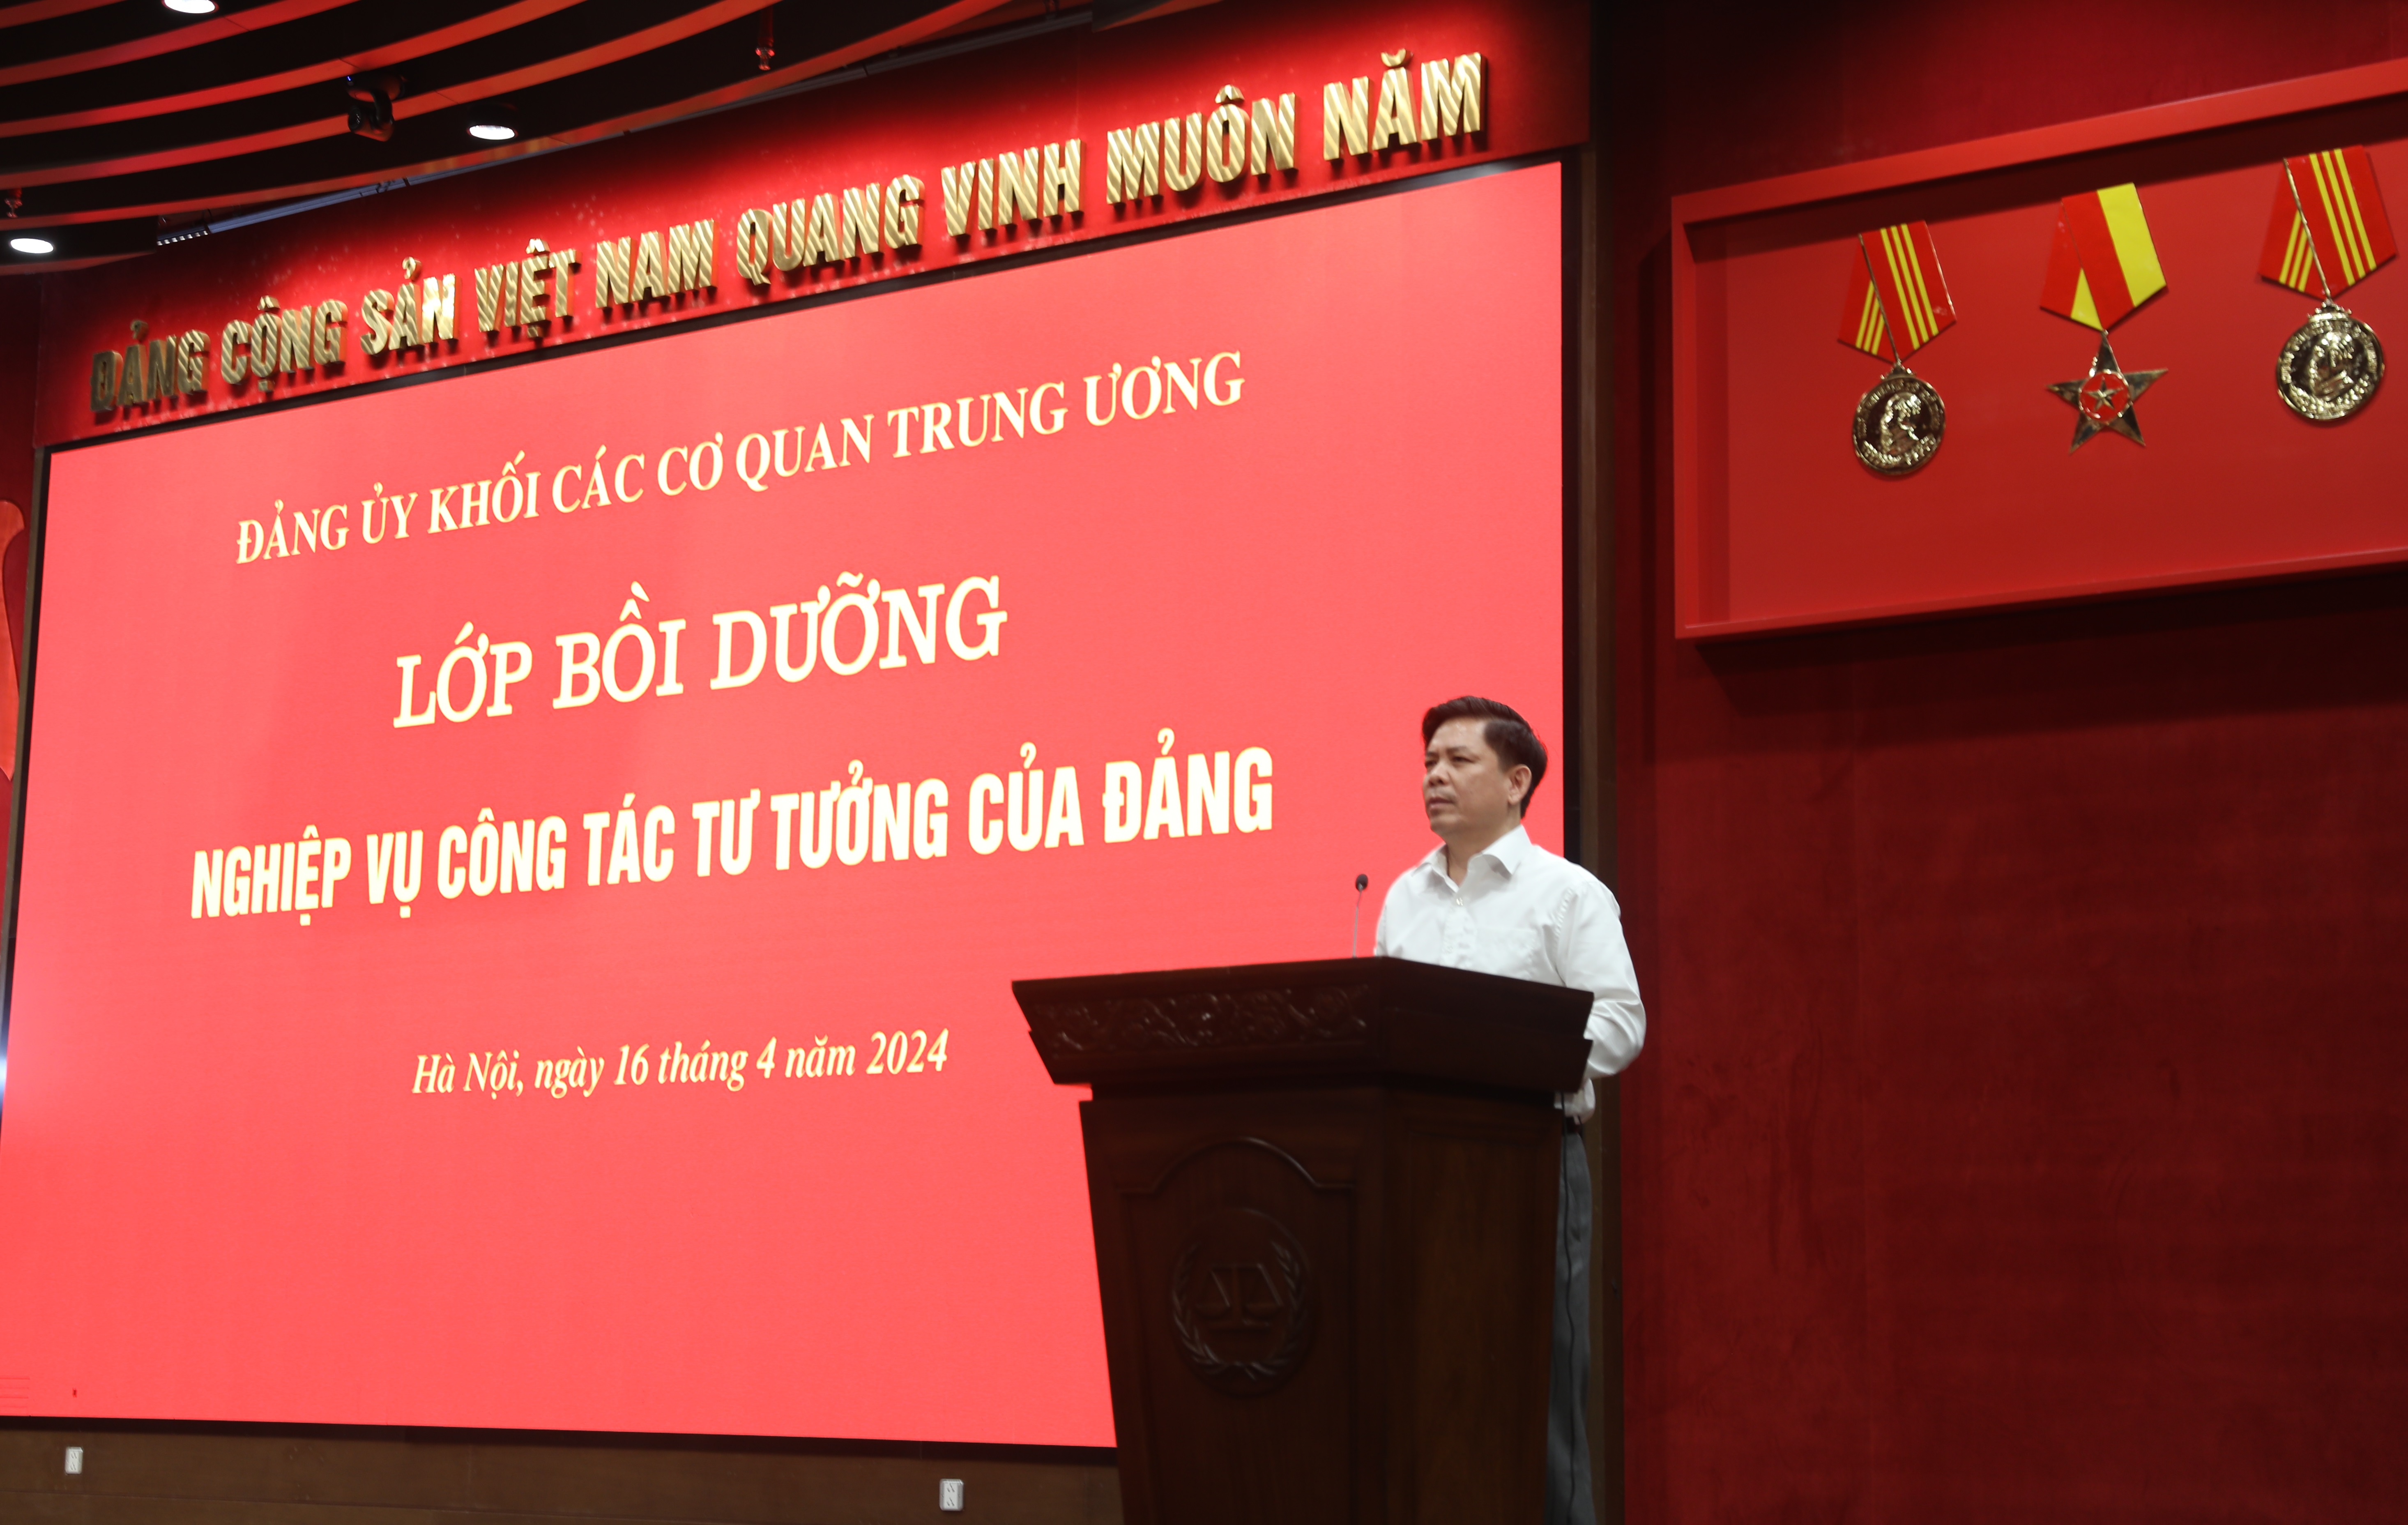 Bí thư Đảng ủy Khối Nguyễn Văn Thể phát biểu khai giảng lớp bồi dưỡng.